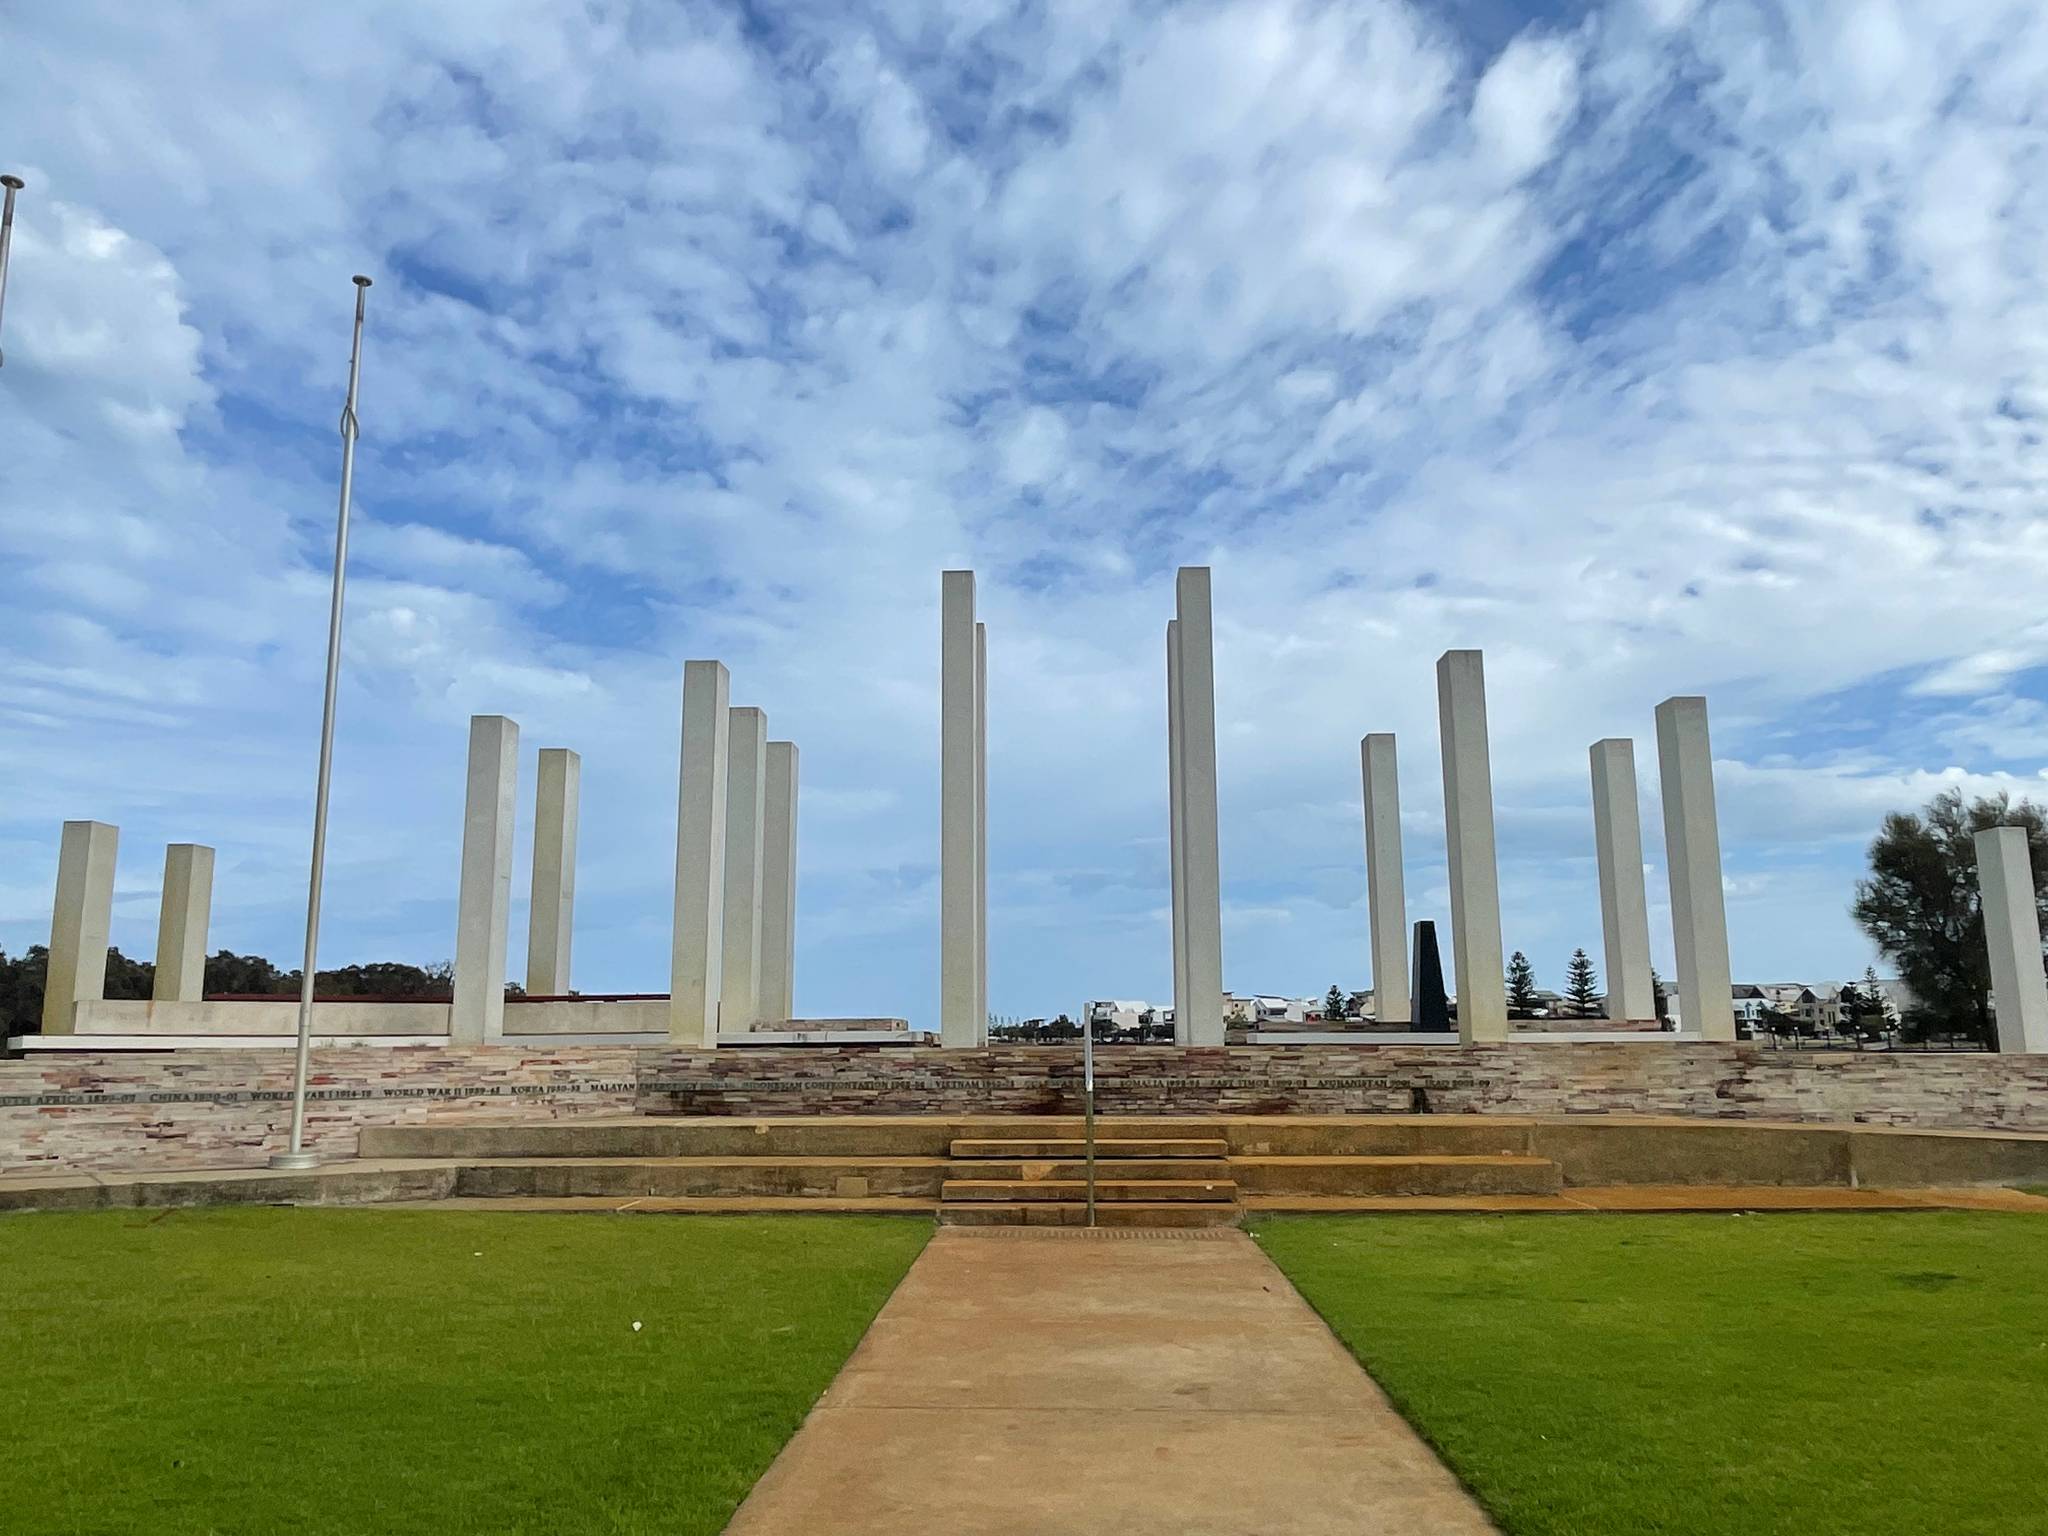 &mdash;Mandurah War Memorial